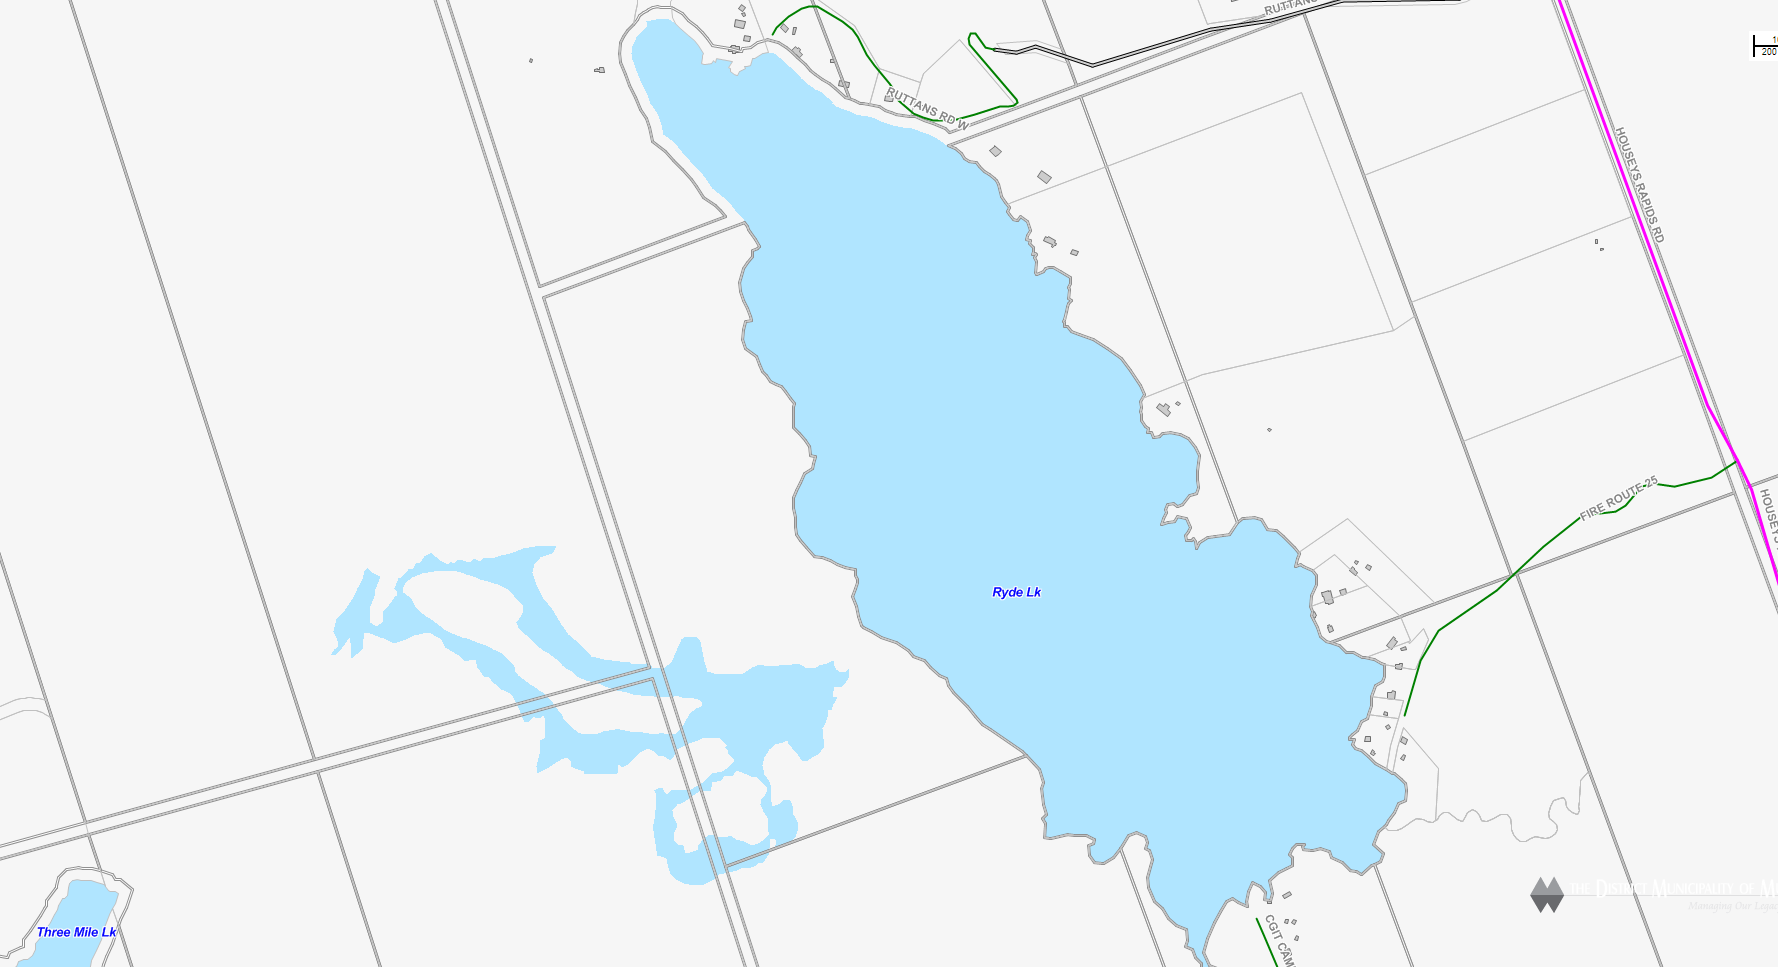 Ryder Lake Cadastral Map - Ryder Lake - Muskoka